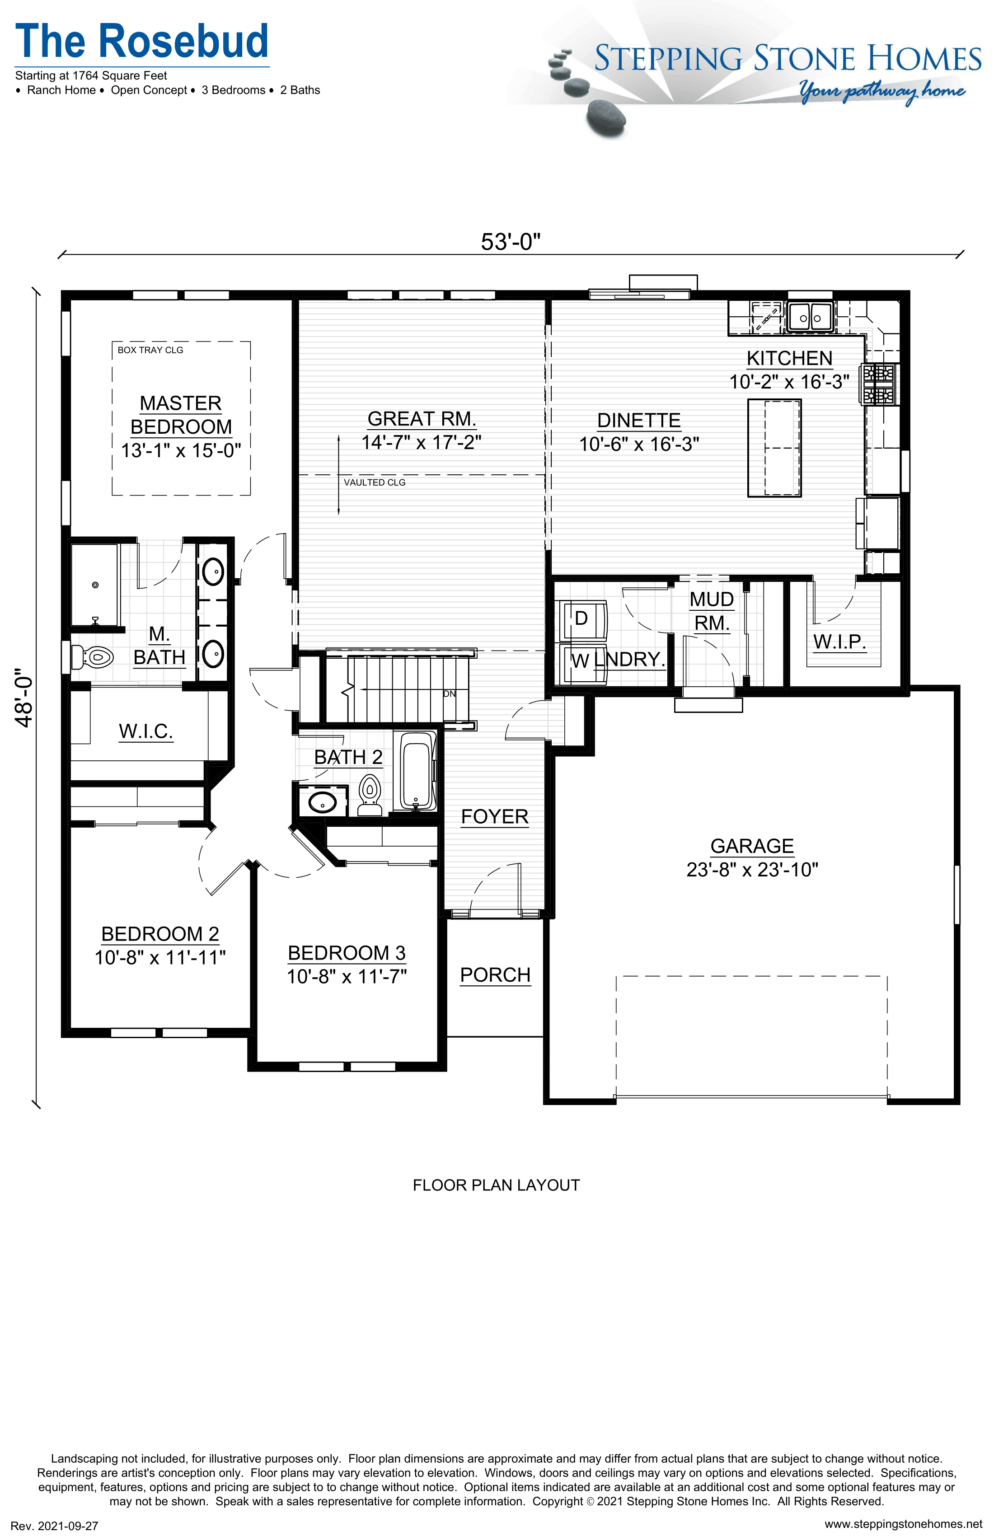 Rosebud Model Home Floor Plan